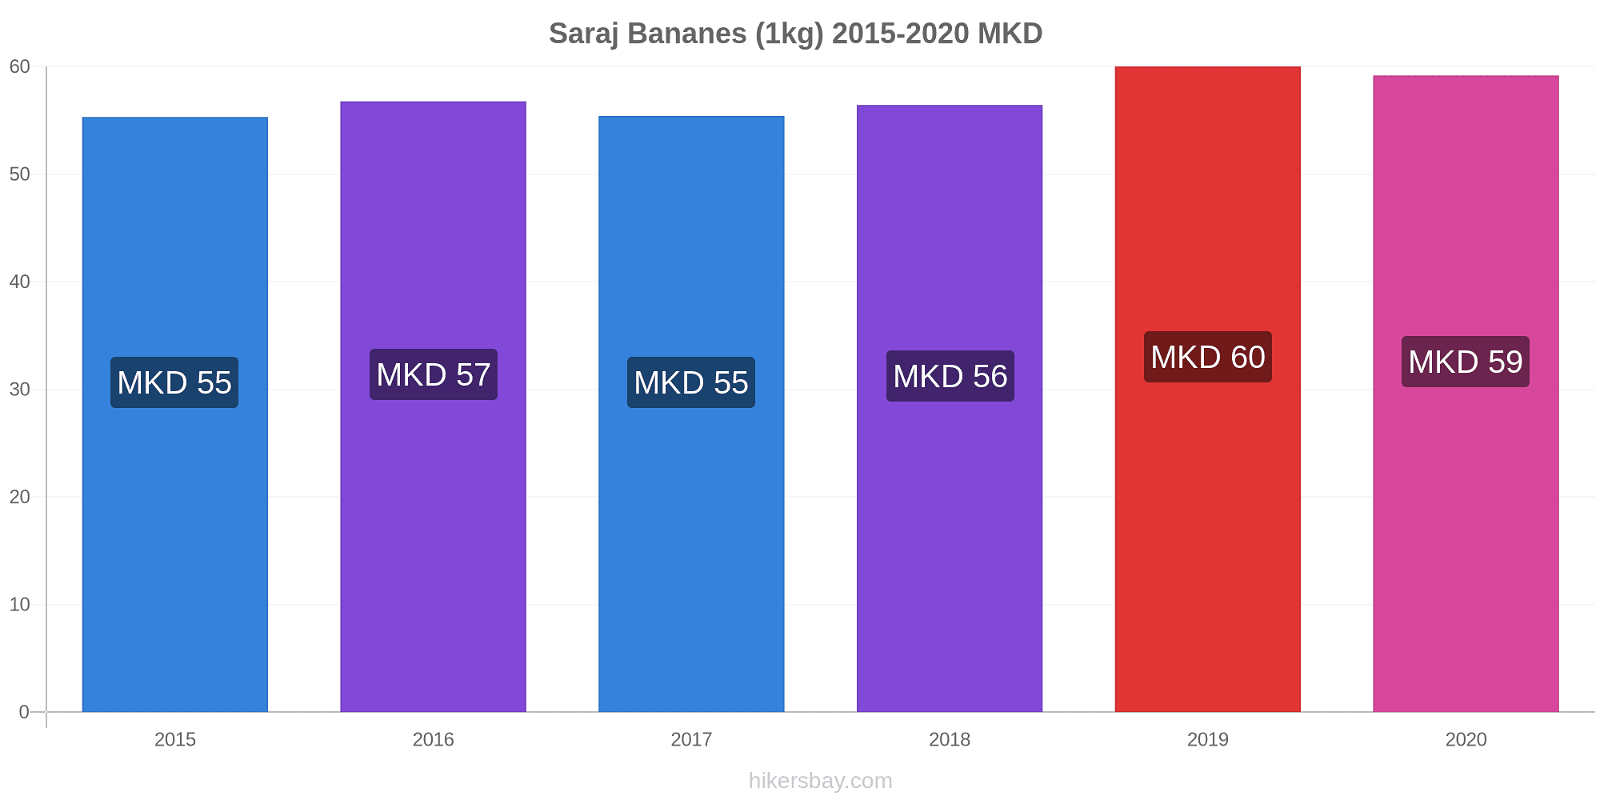 Saraj changements de prix Bananes (1kg) hikersbay.com